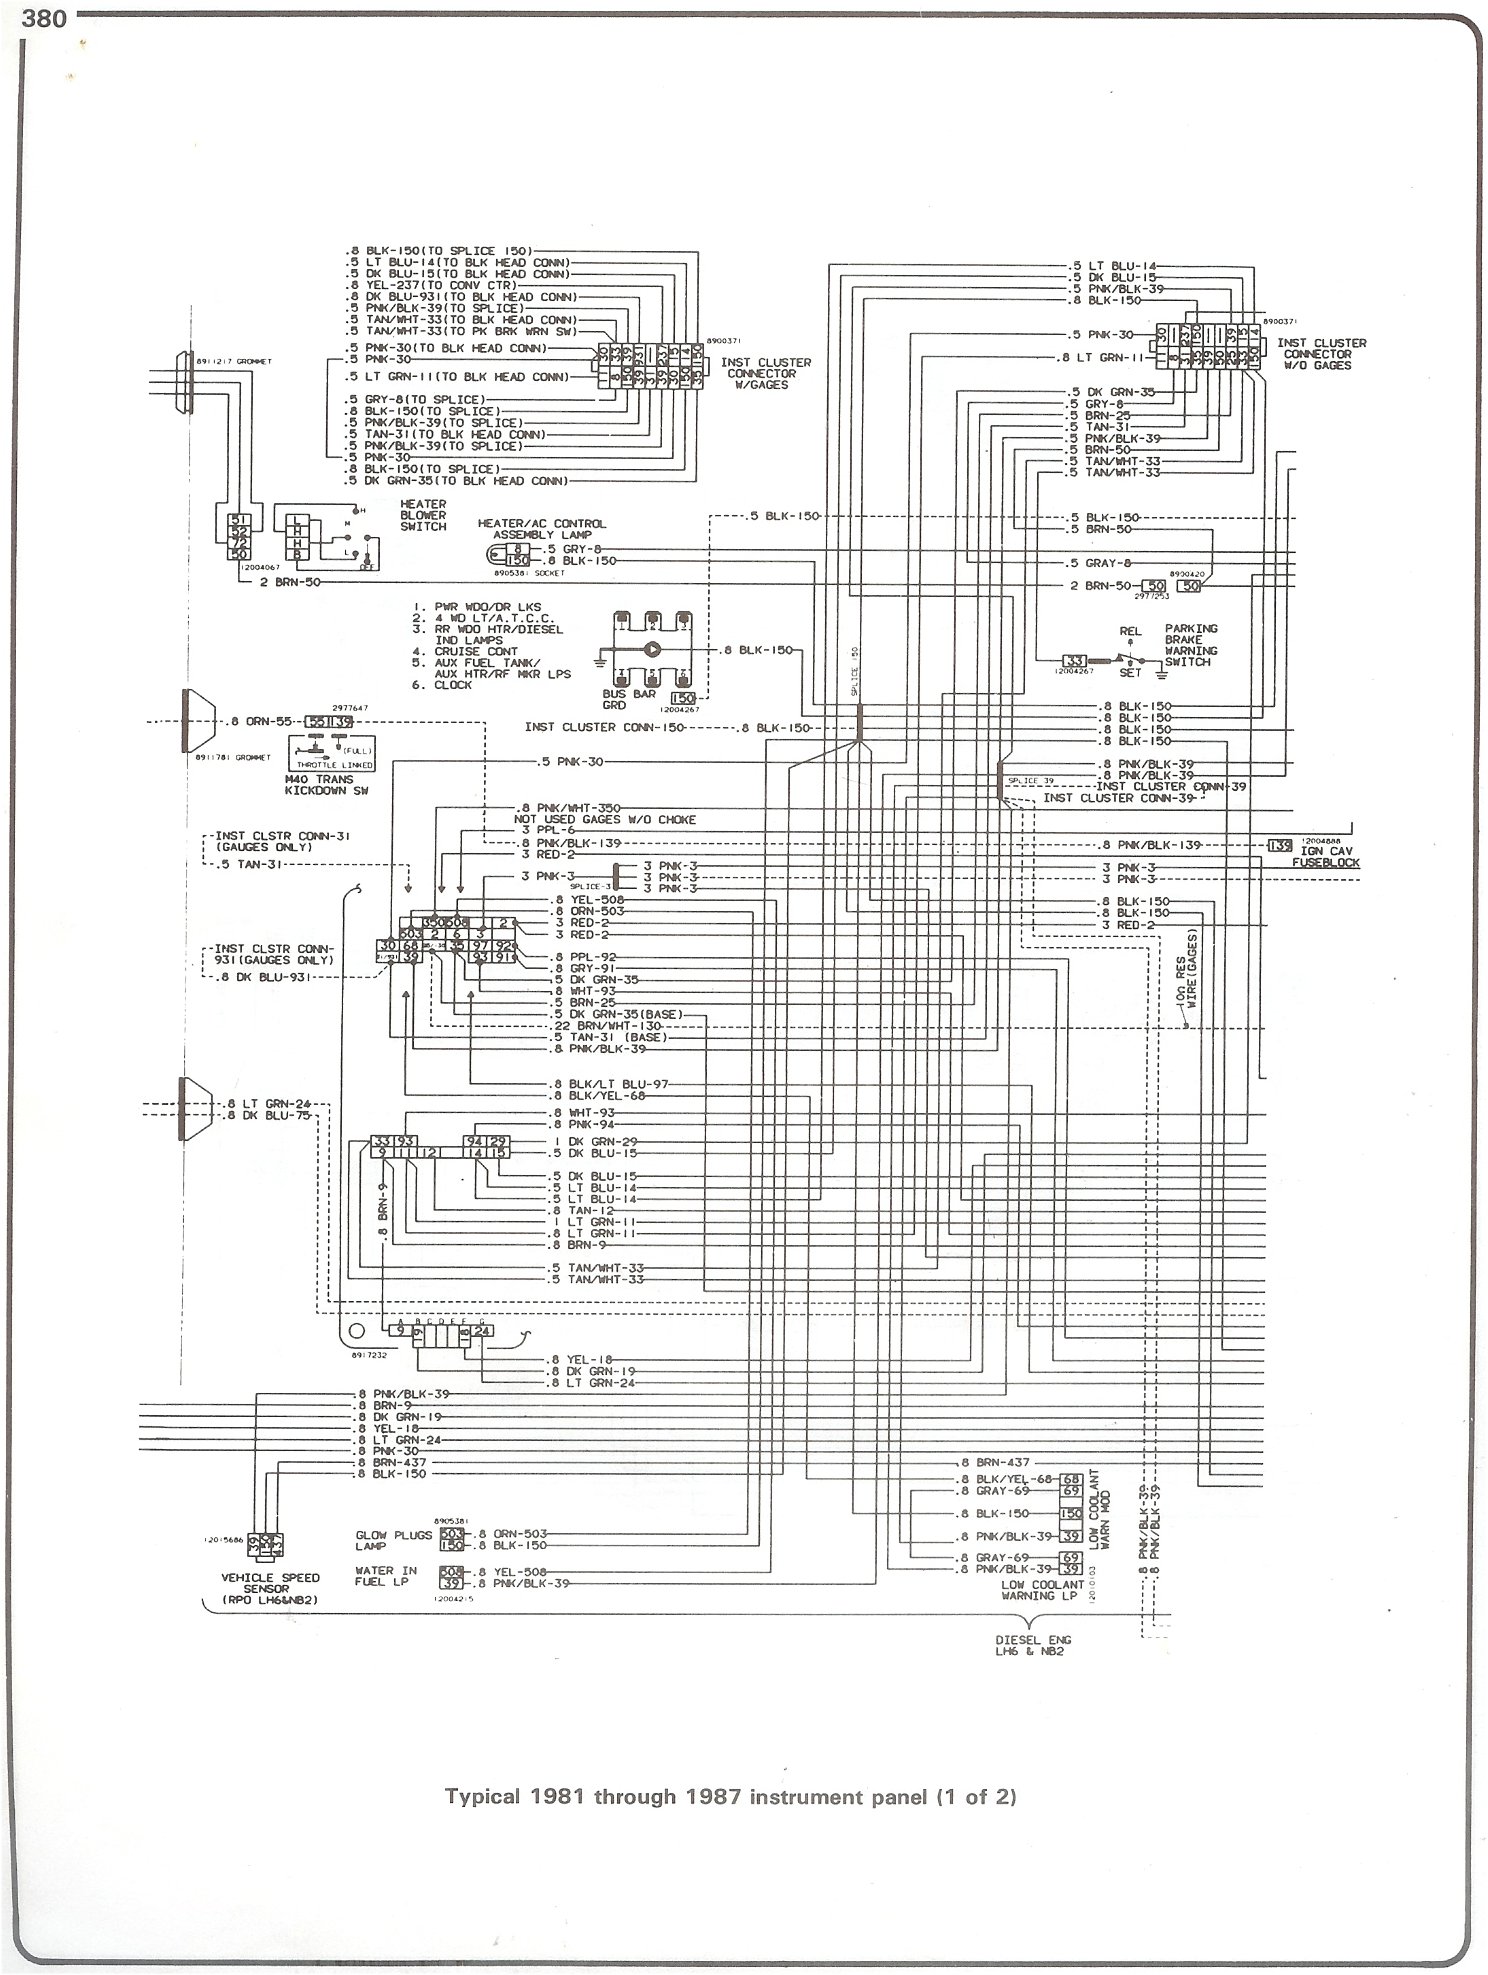 1970 Chevy Alternator Wiring Diagram from schematron.org